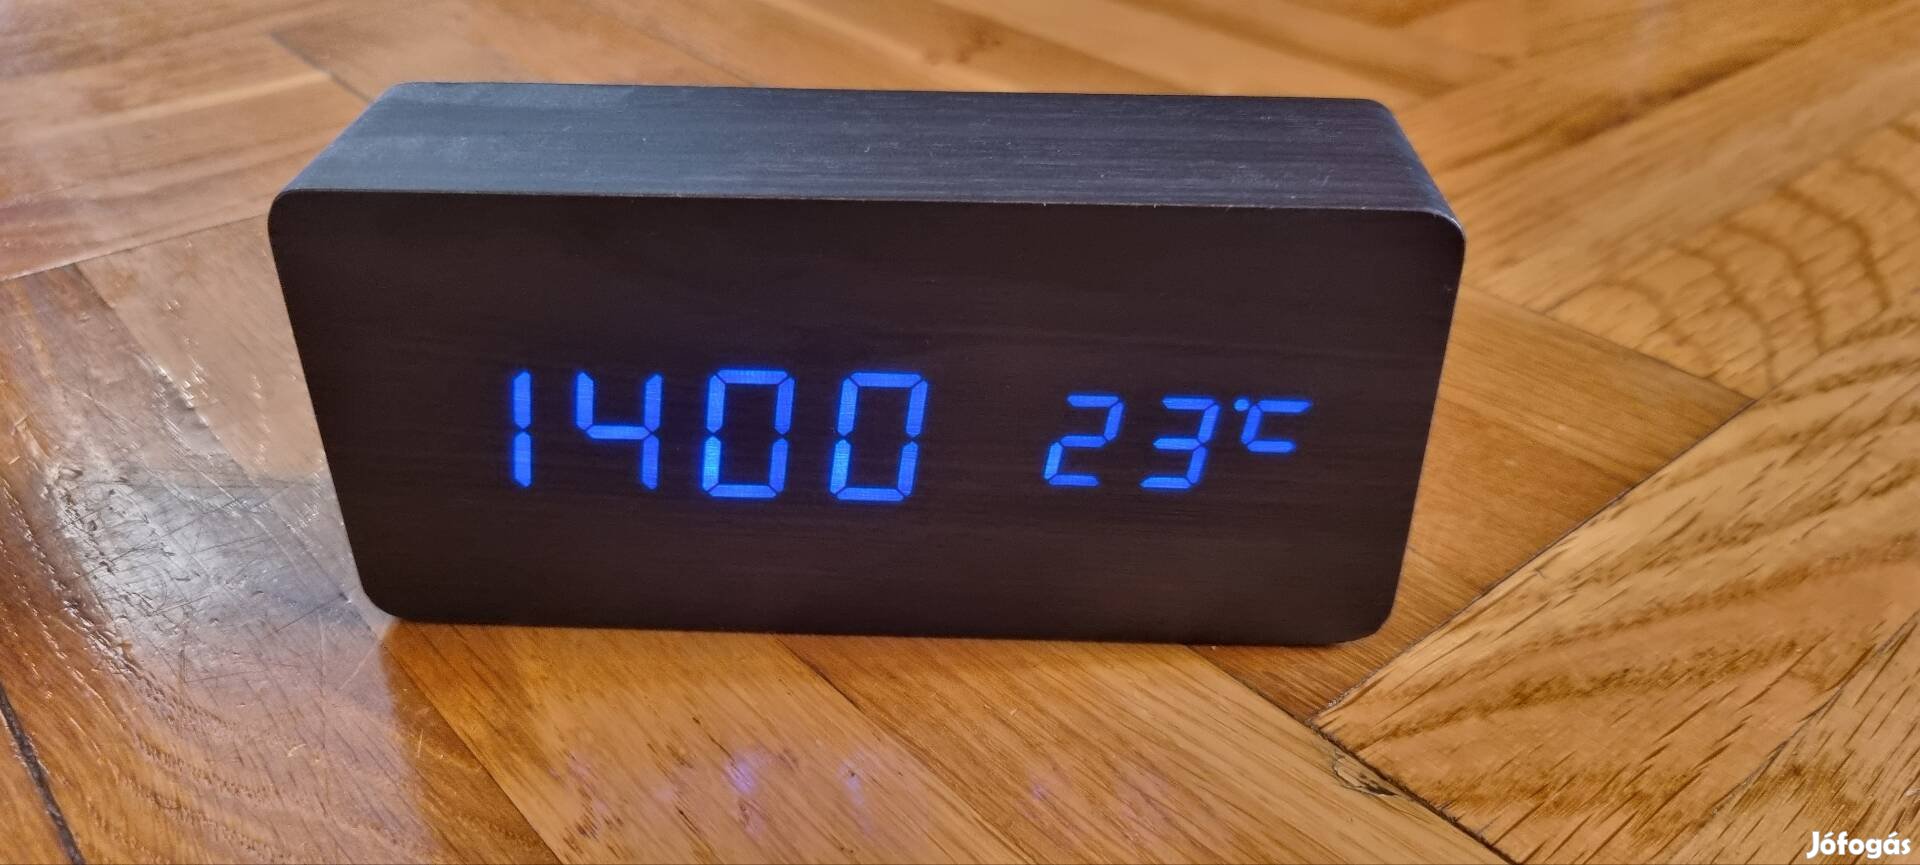 Asztali óra, dátum és hőmérséklet kijelzővel 